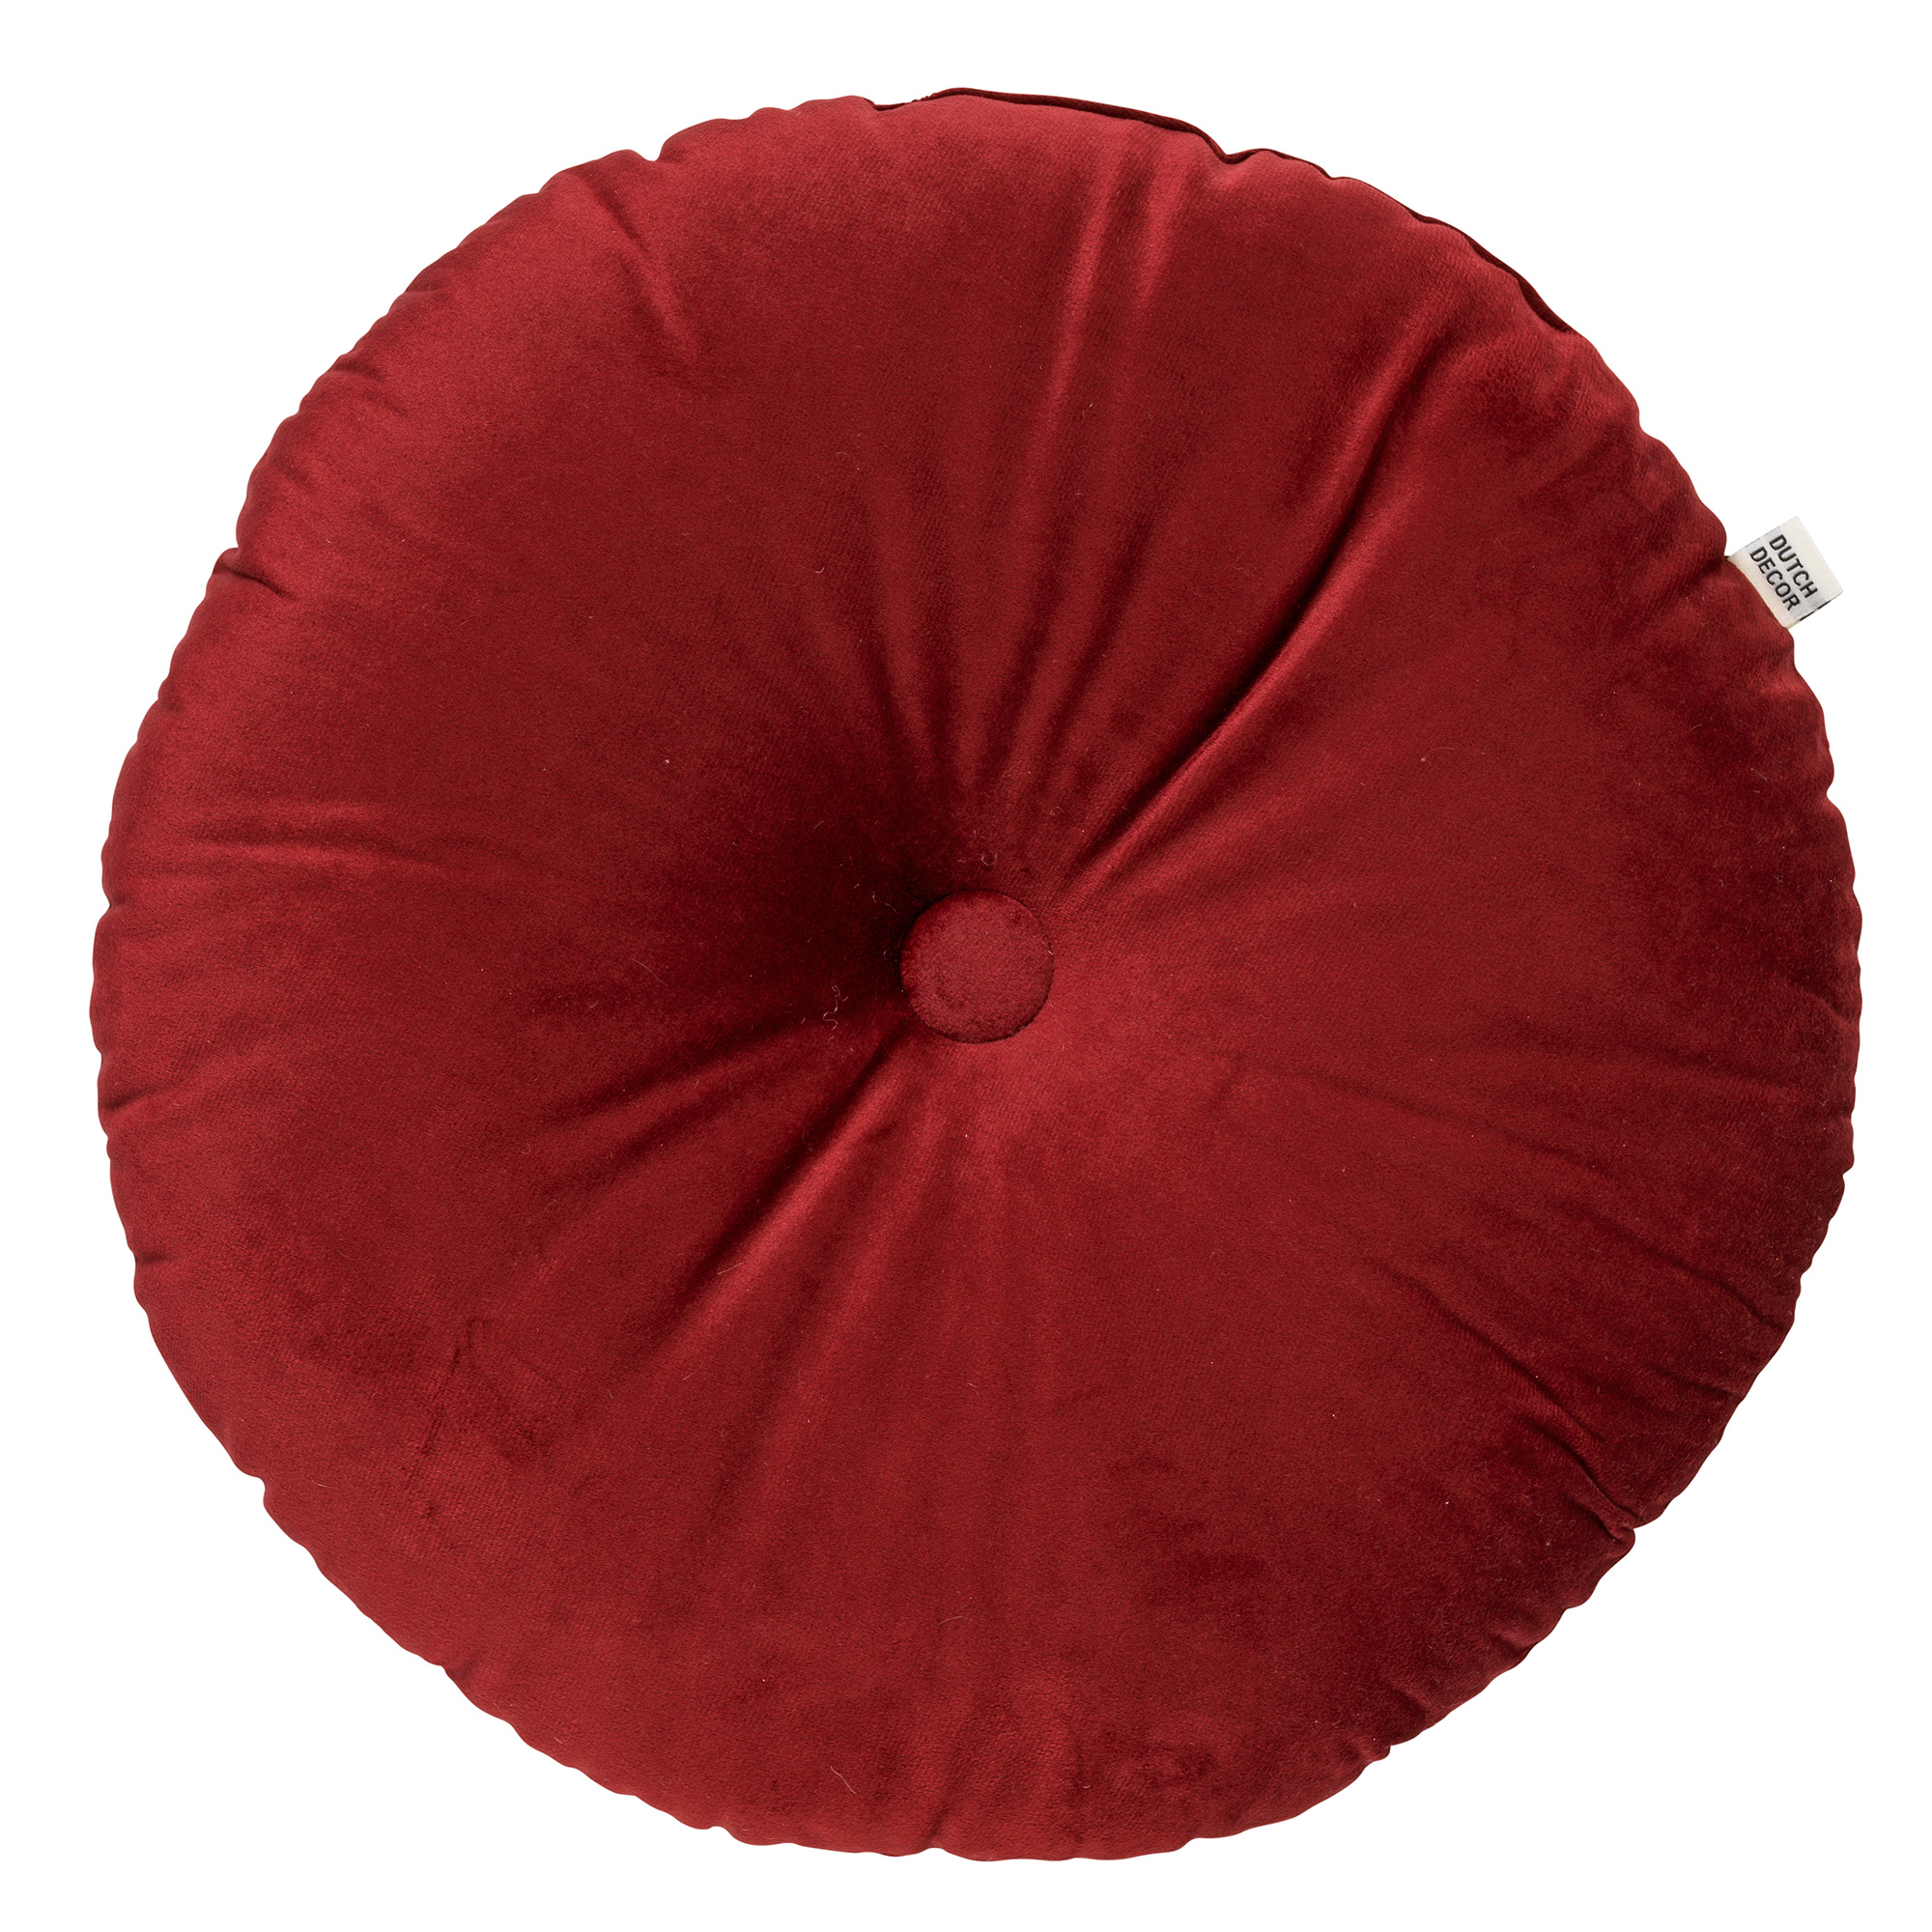 OLLY - Sierkussen rond velvet Merlot 40 cm - rood